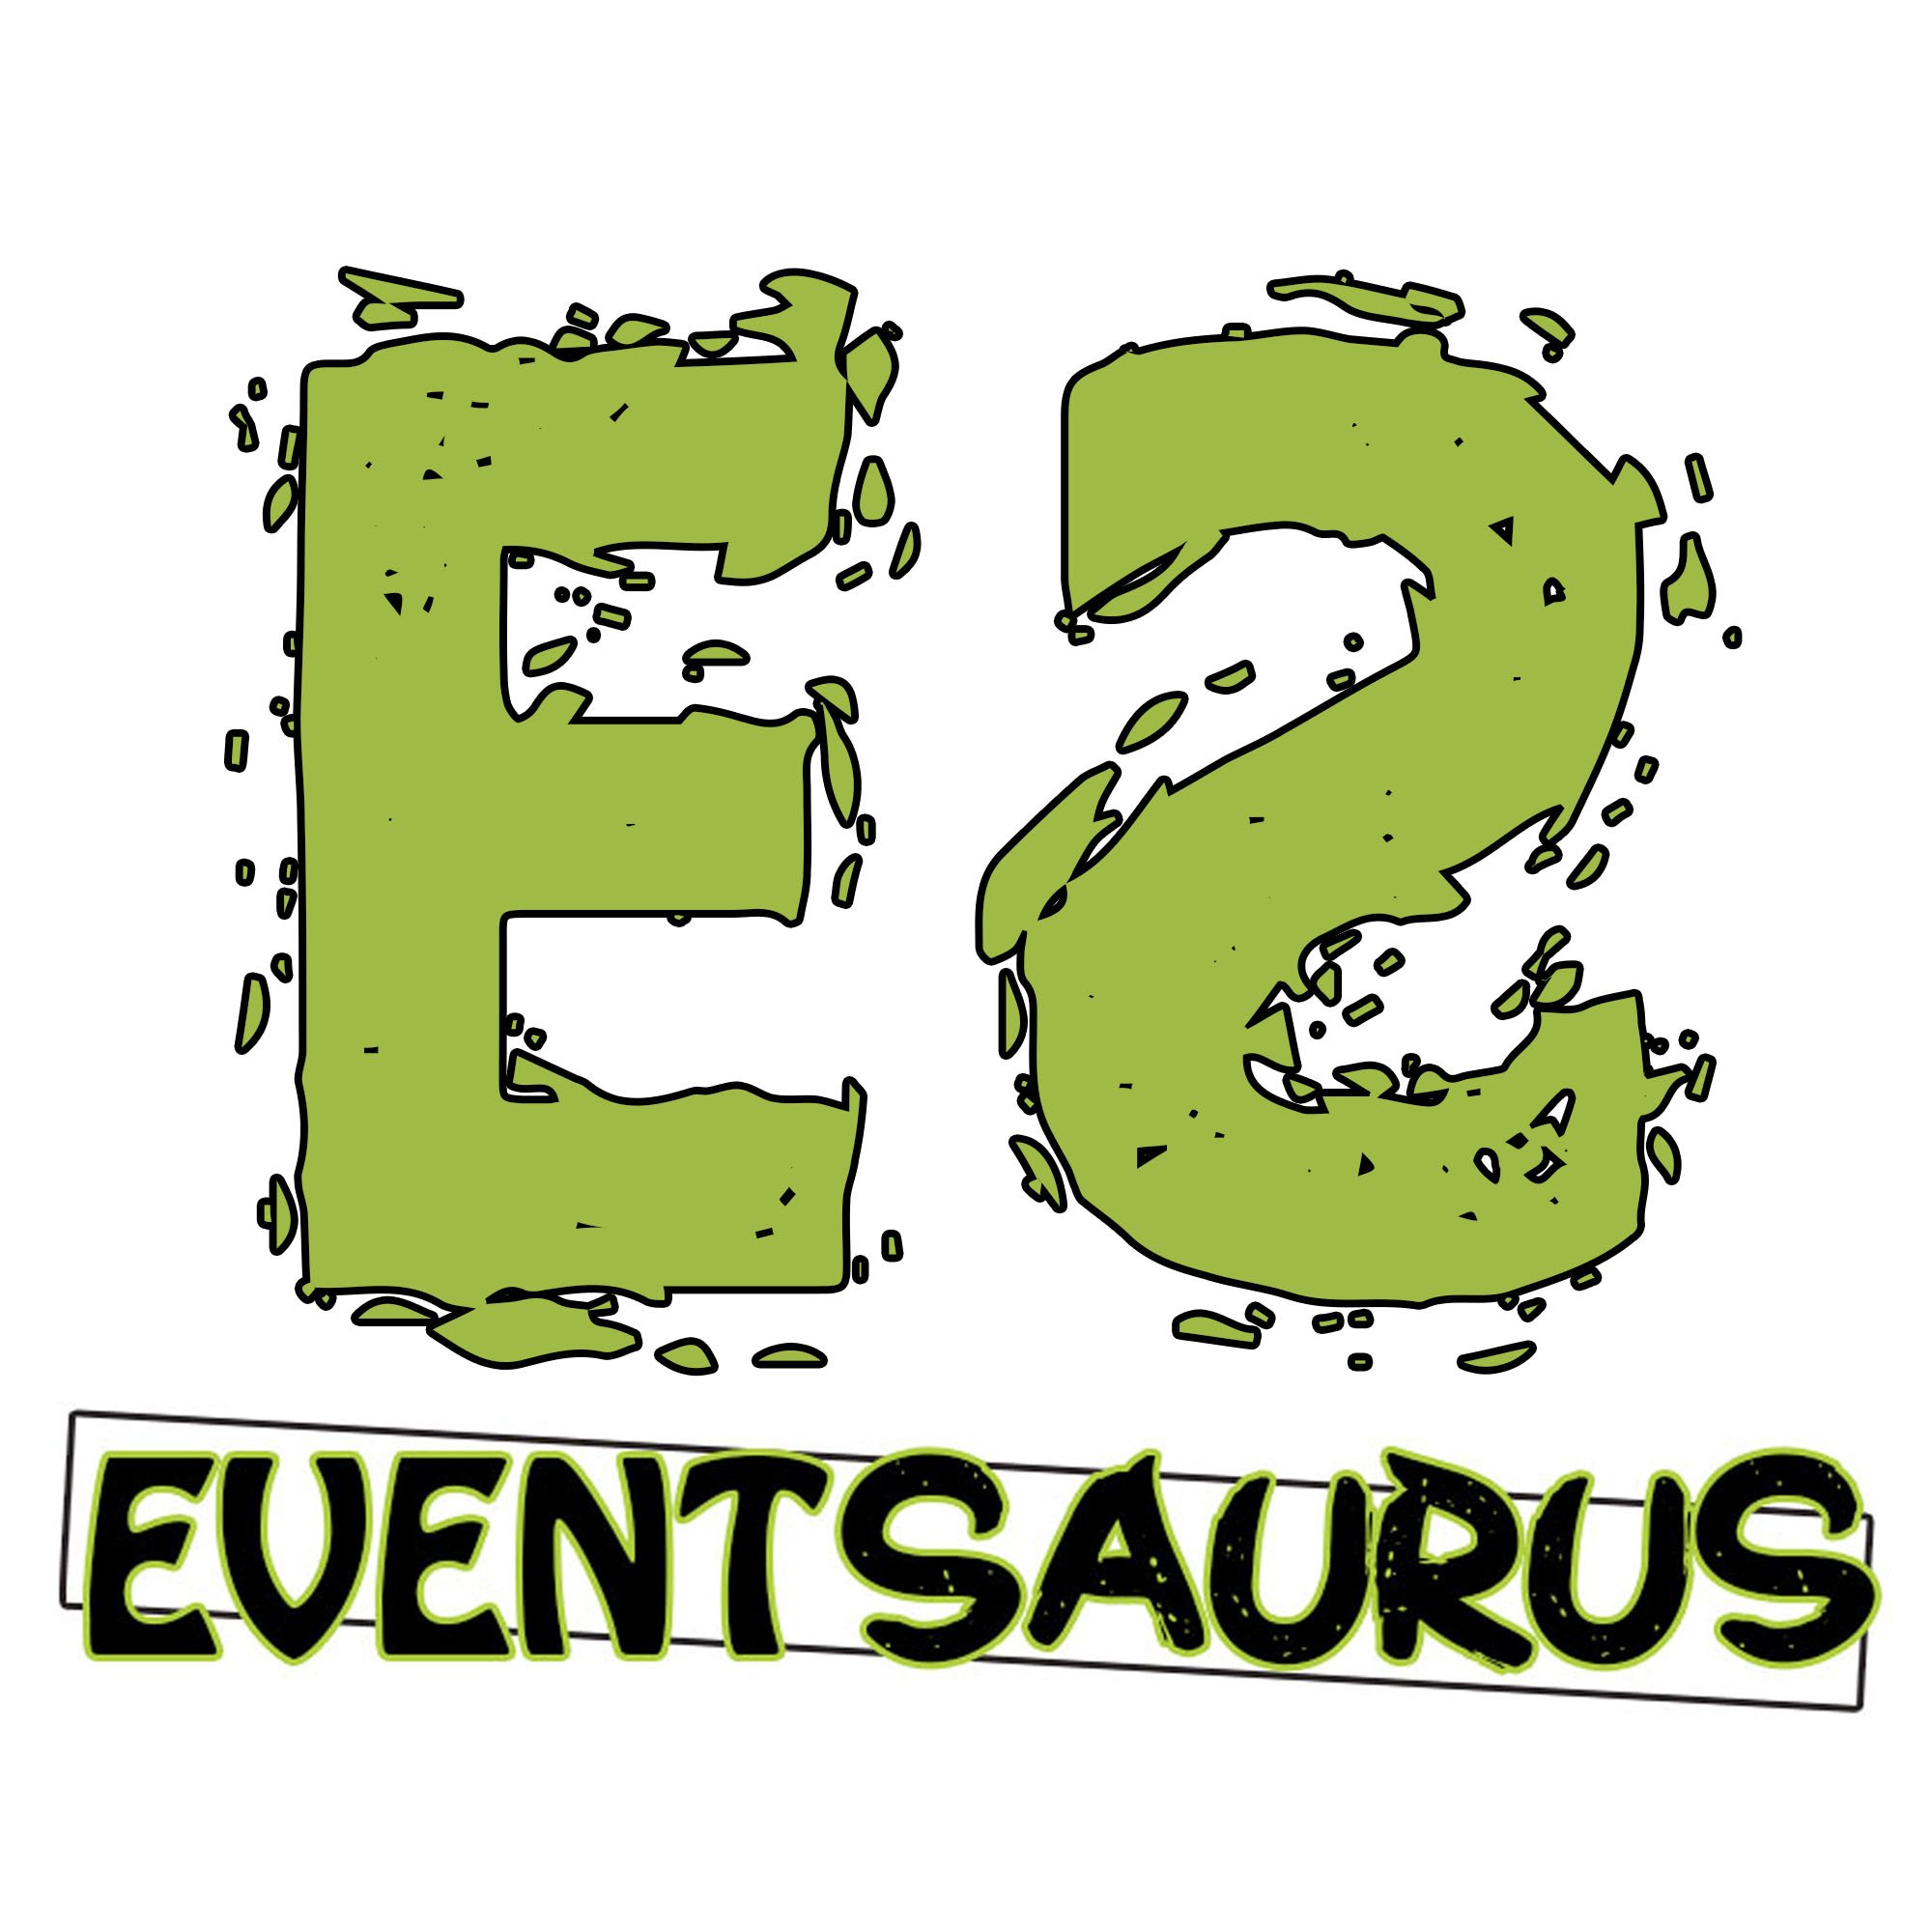 Event Saurus